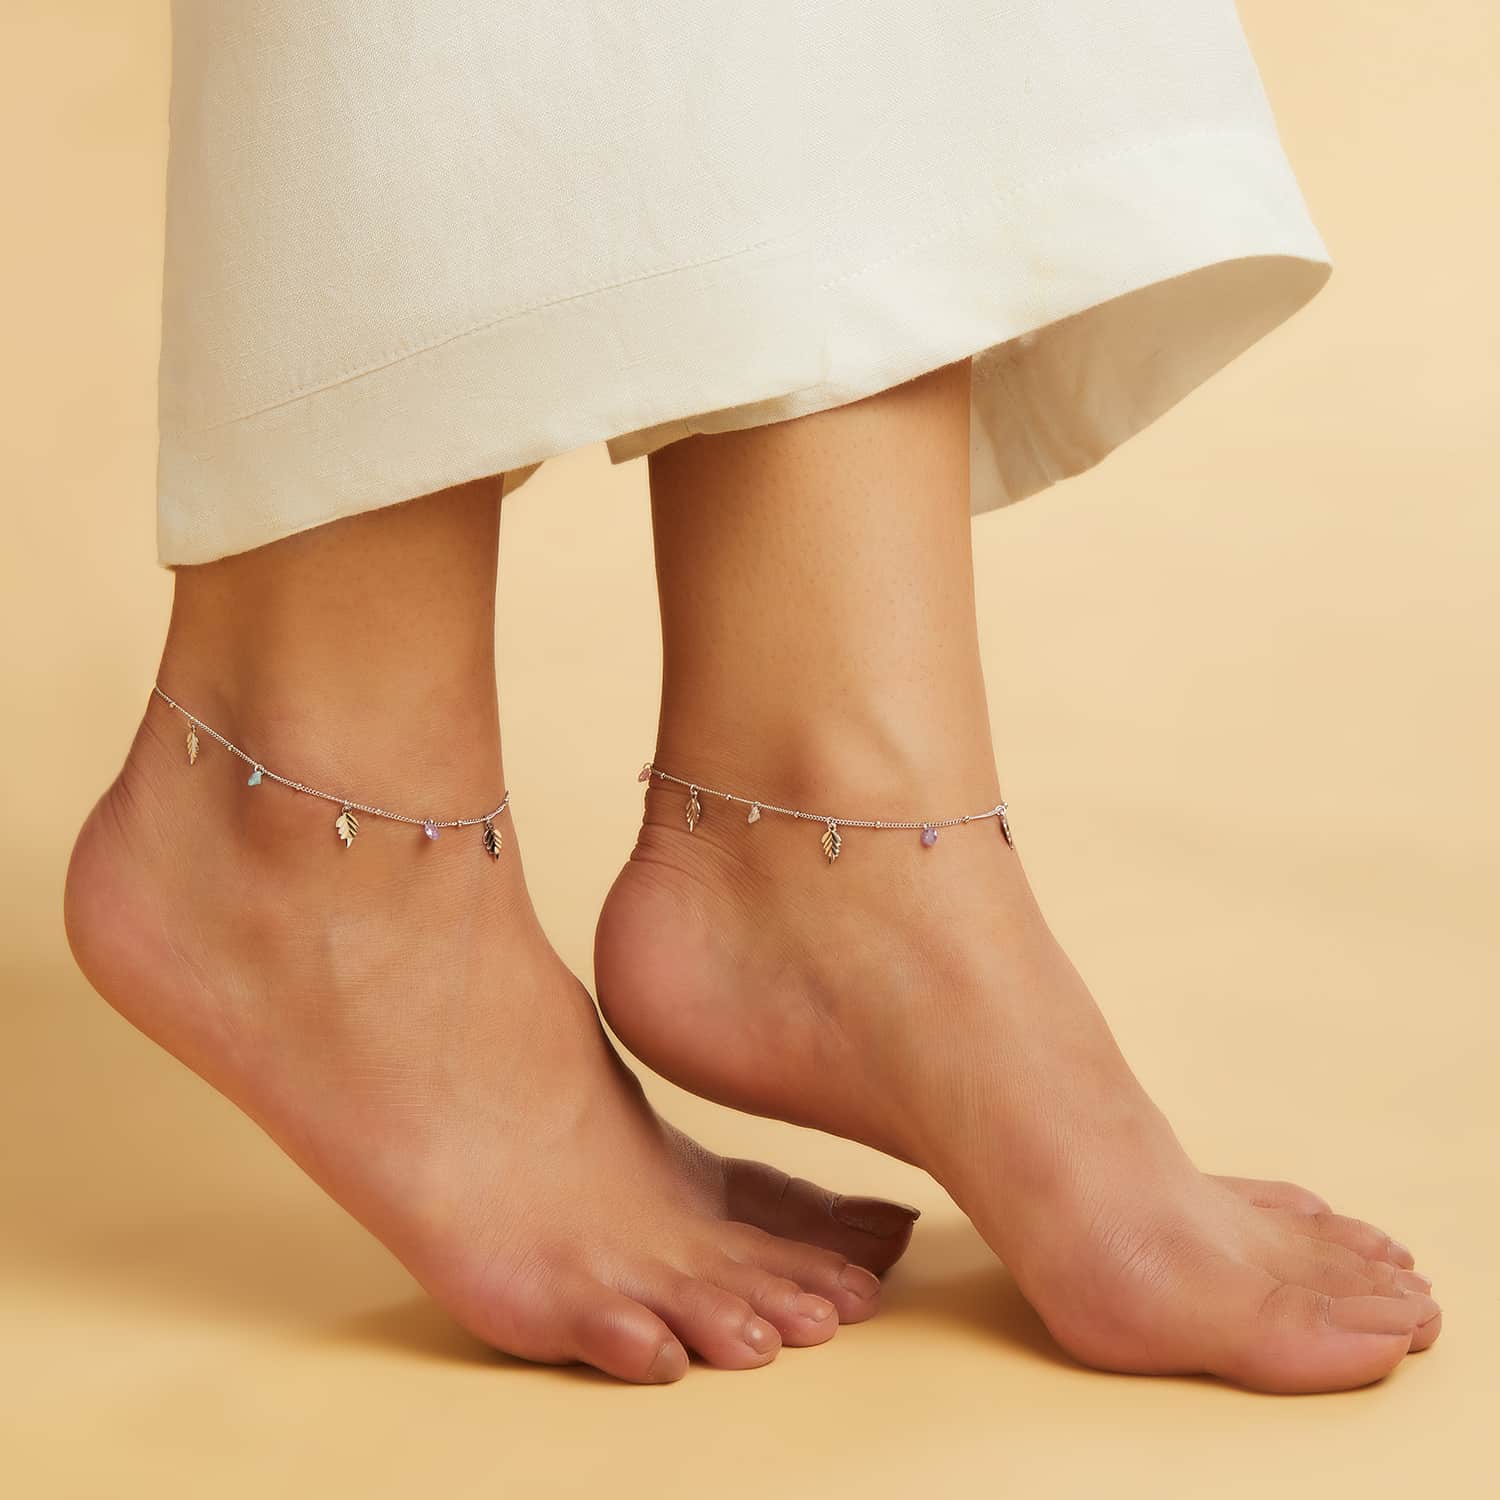 Leaf & Drops 925 Sterling Silver Anklet